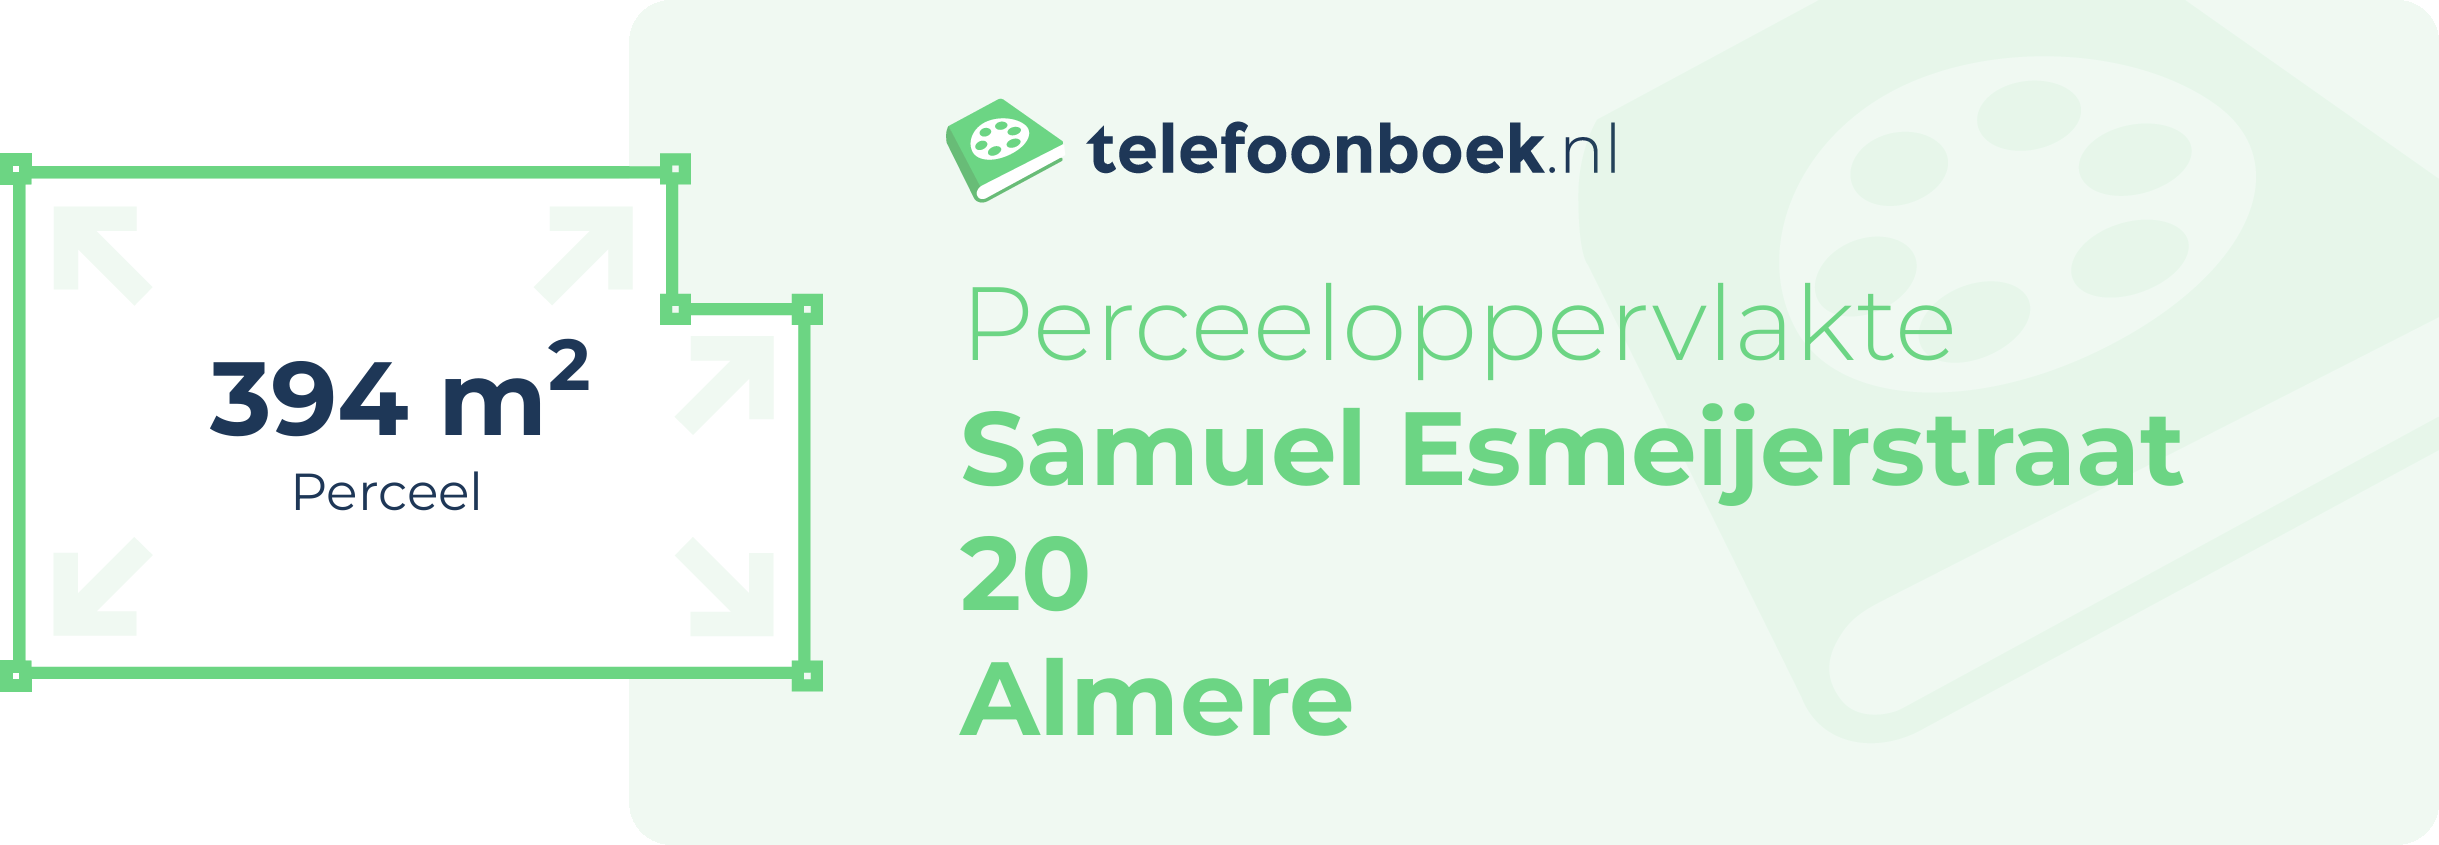 Perceeloppervlakte Samuel Esmeijerstraat 20 Almere